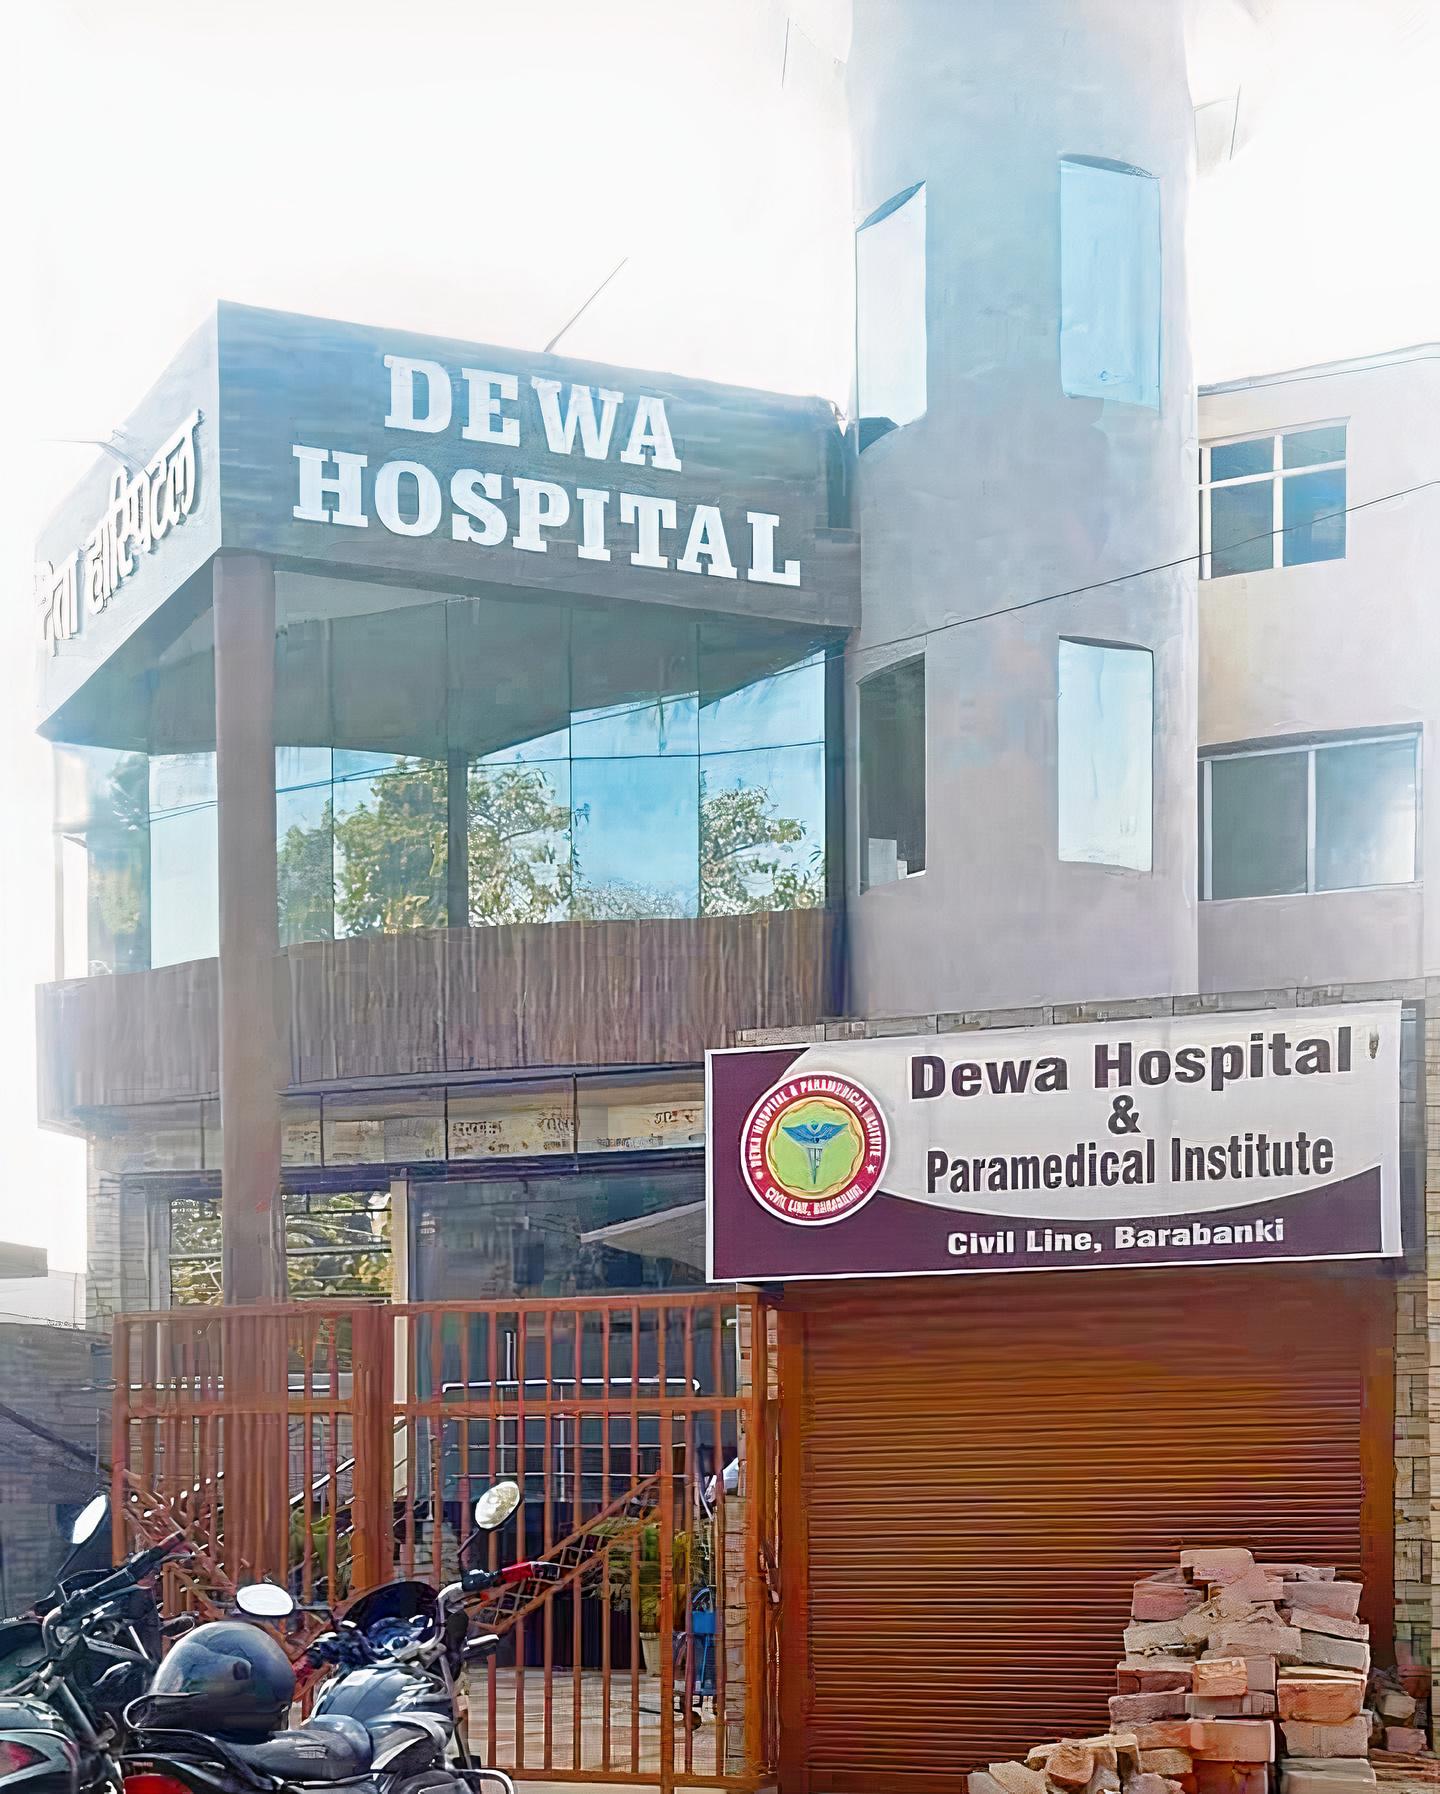 Dewa Hospital